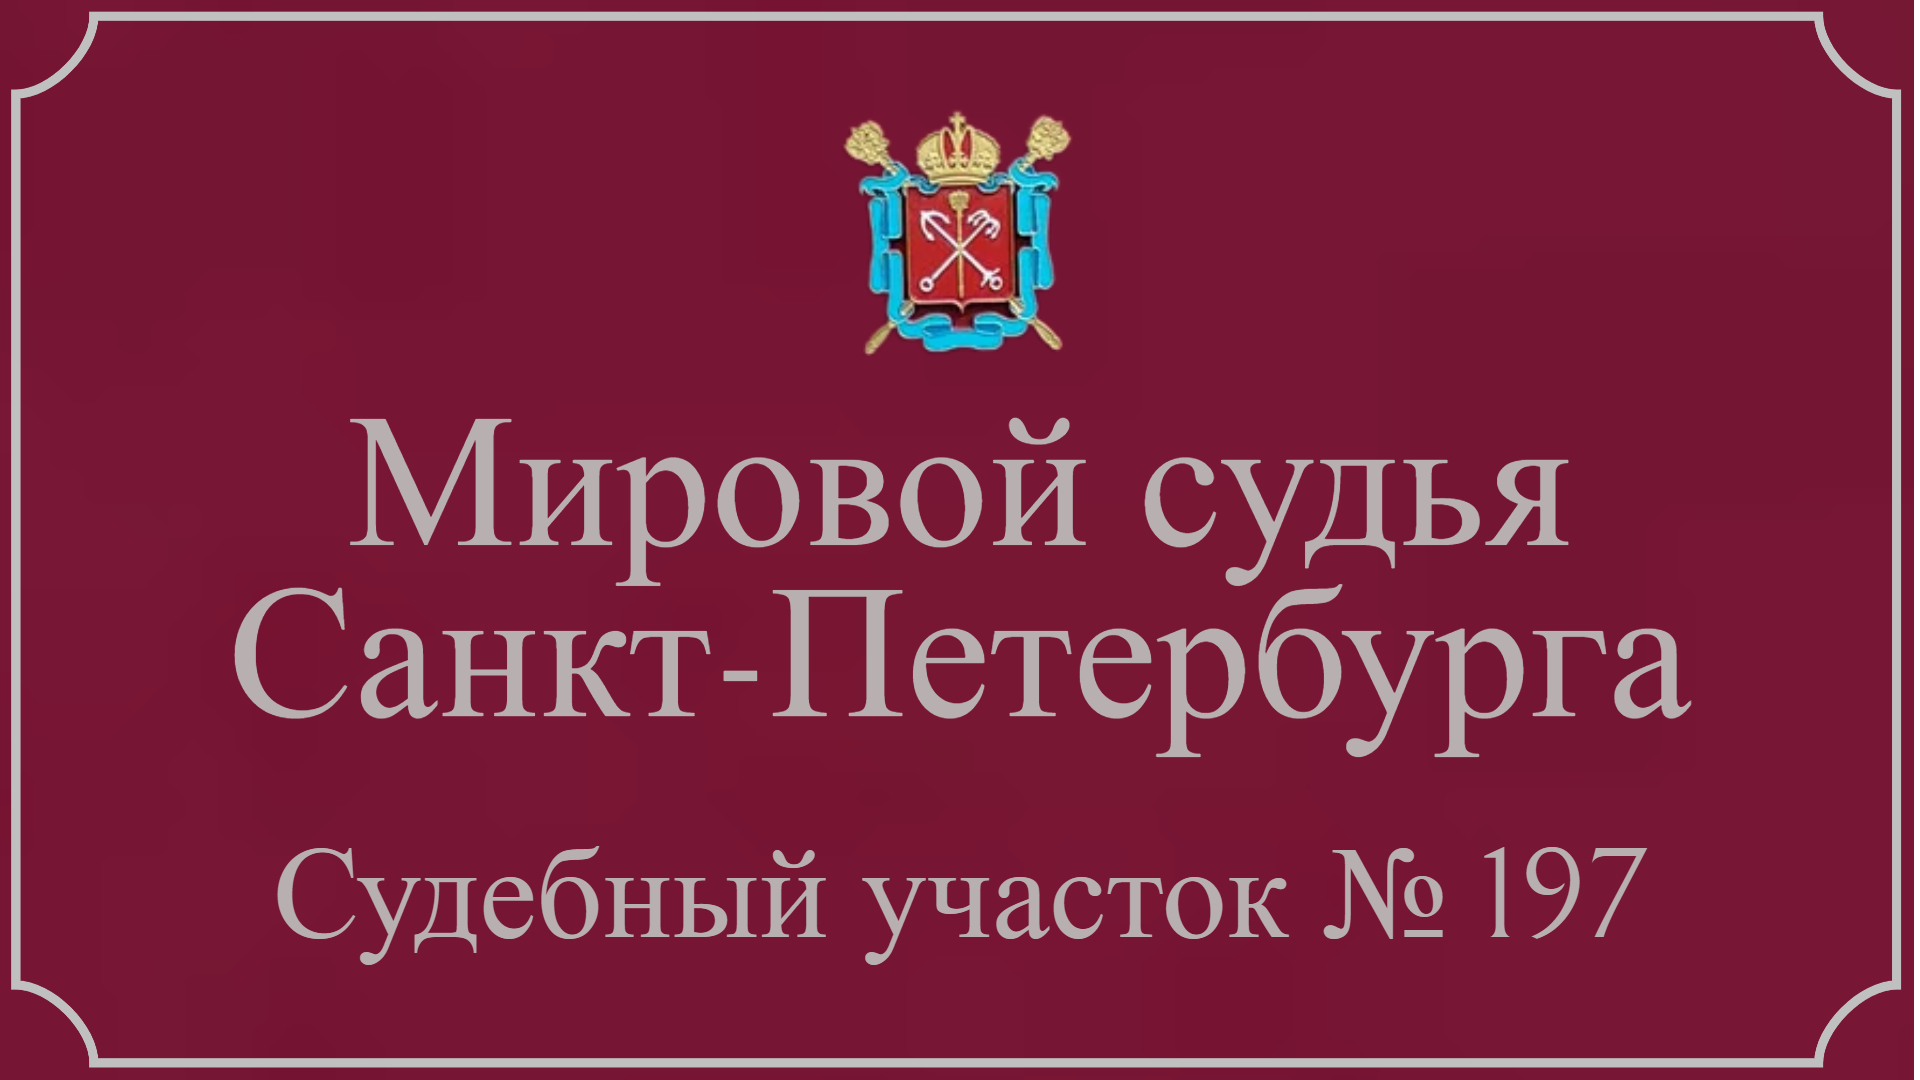 Информация по 197 судебному участку в Санкт-Петербурге.